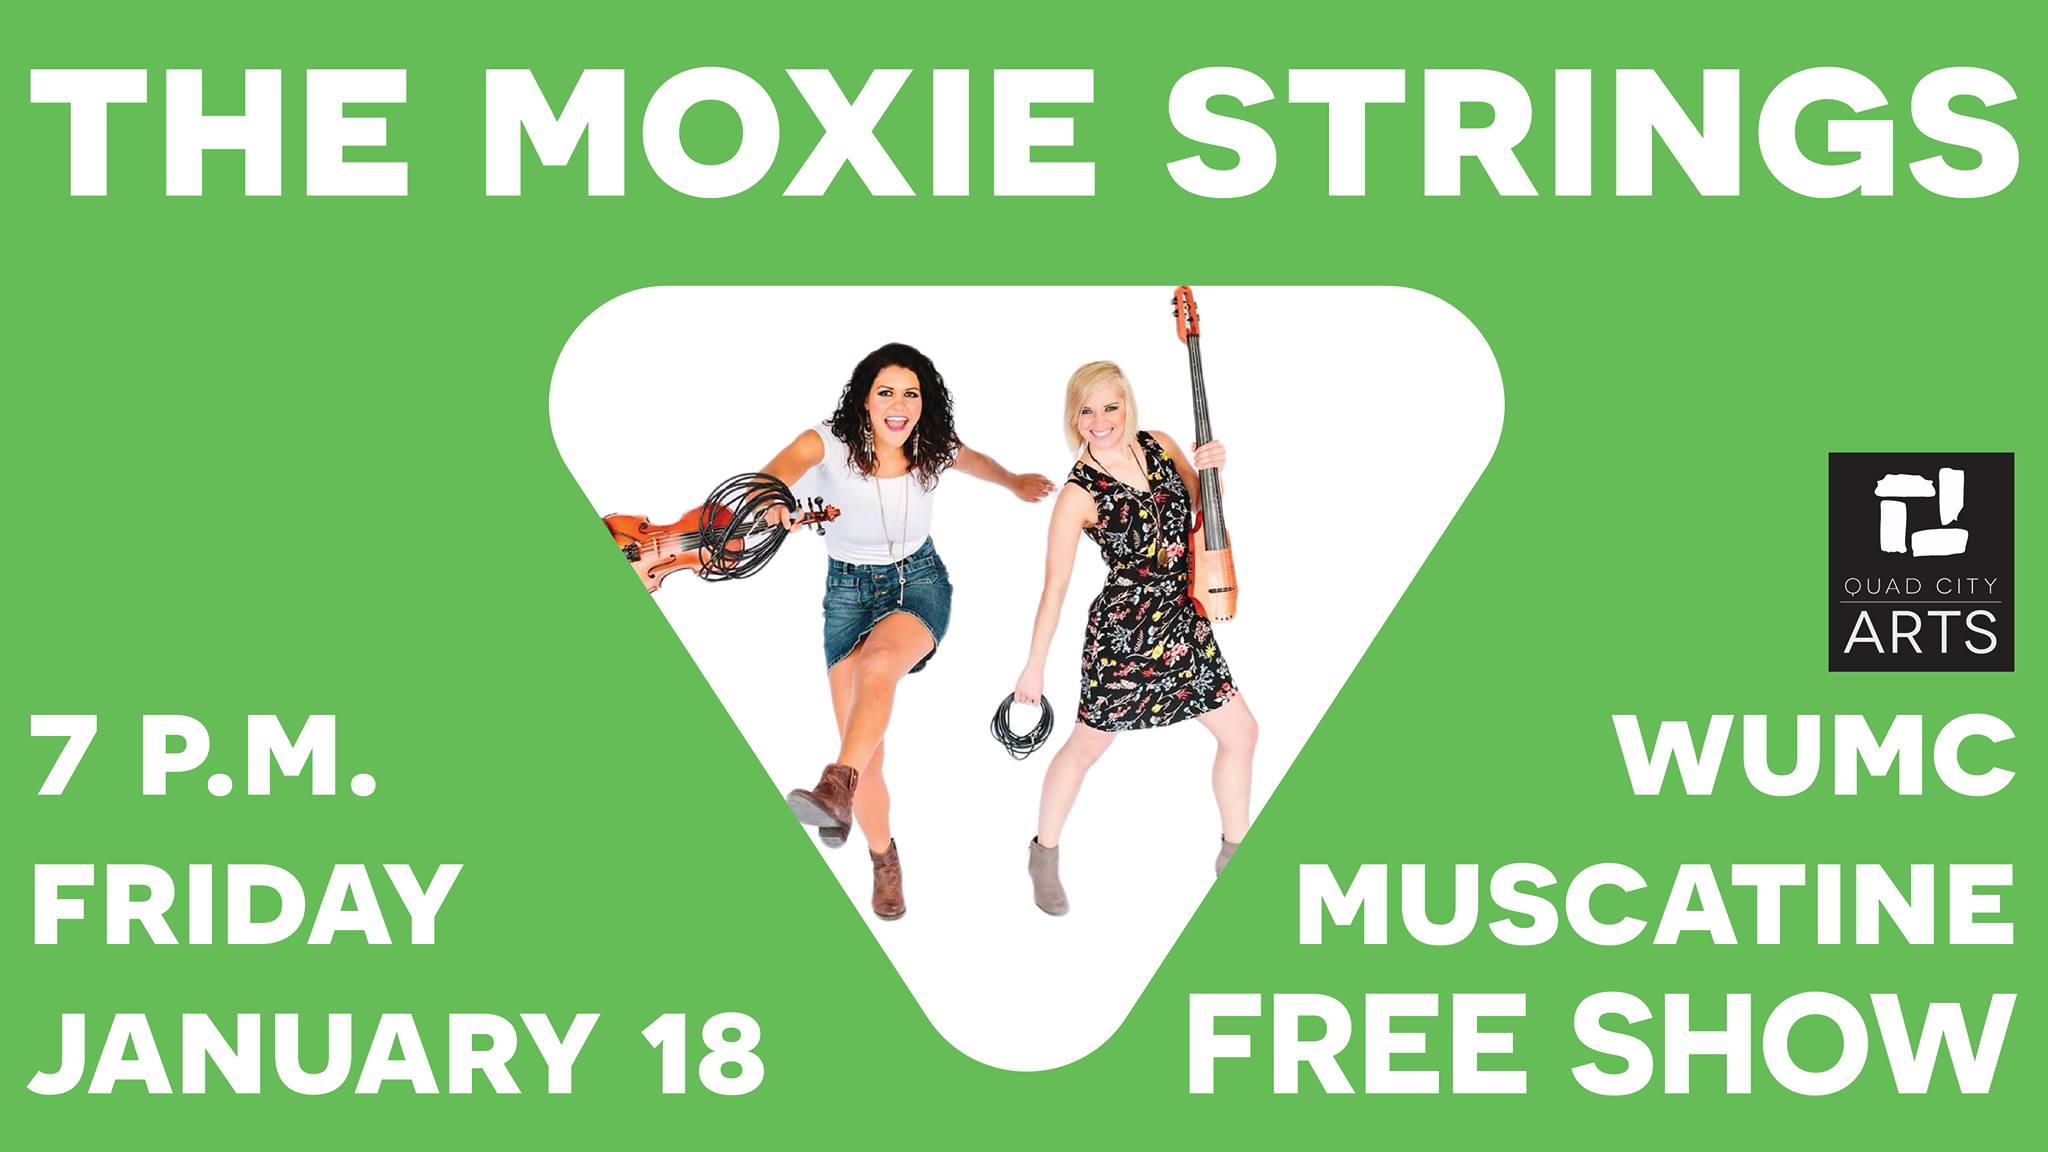 The Moxie Strings